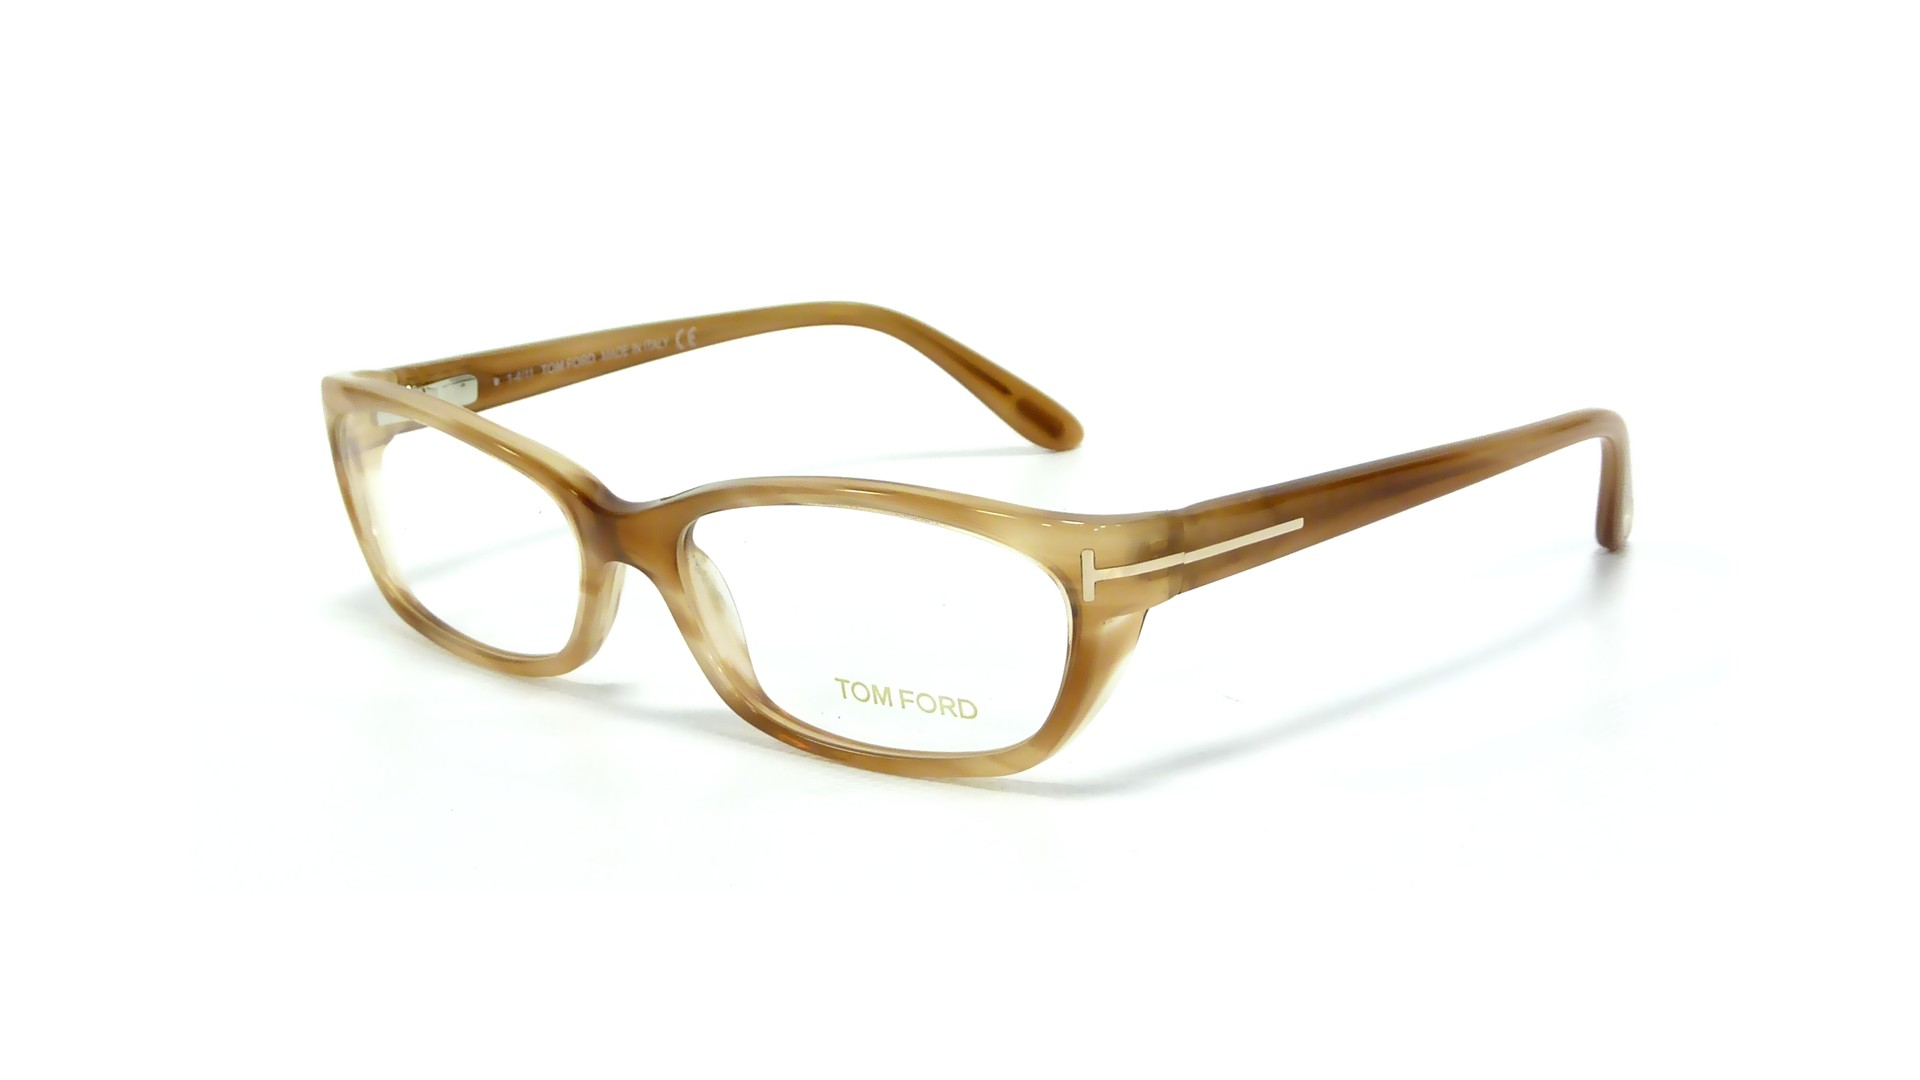 Tom ford cat eye glasses frames #1